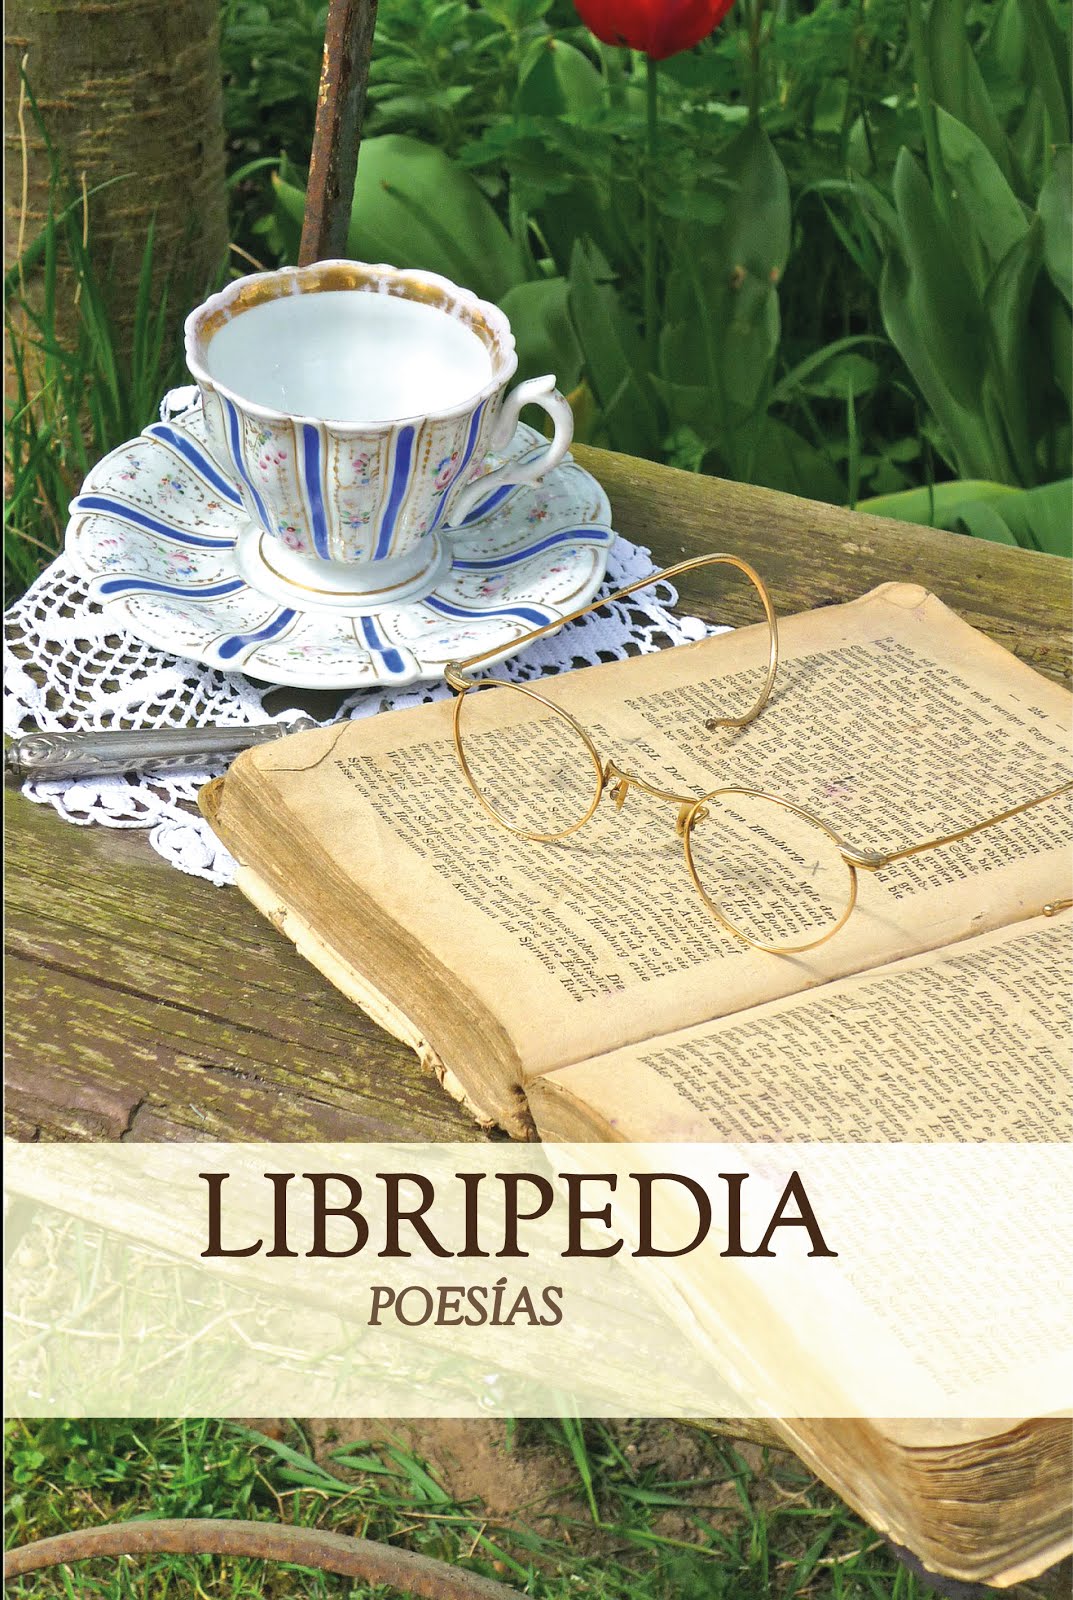 "Libripedia poesías"